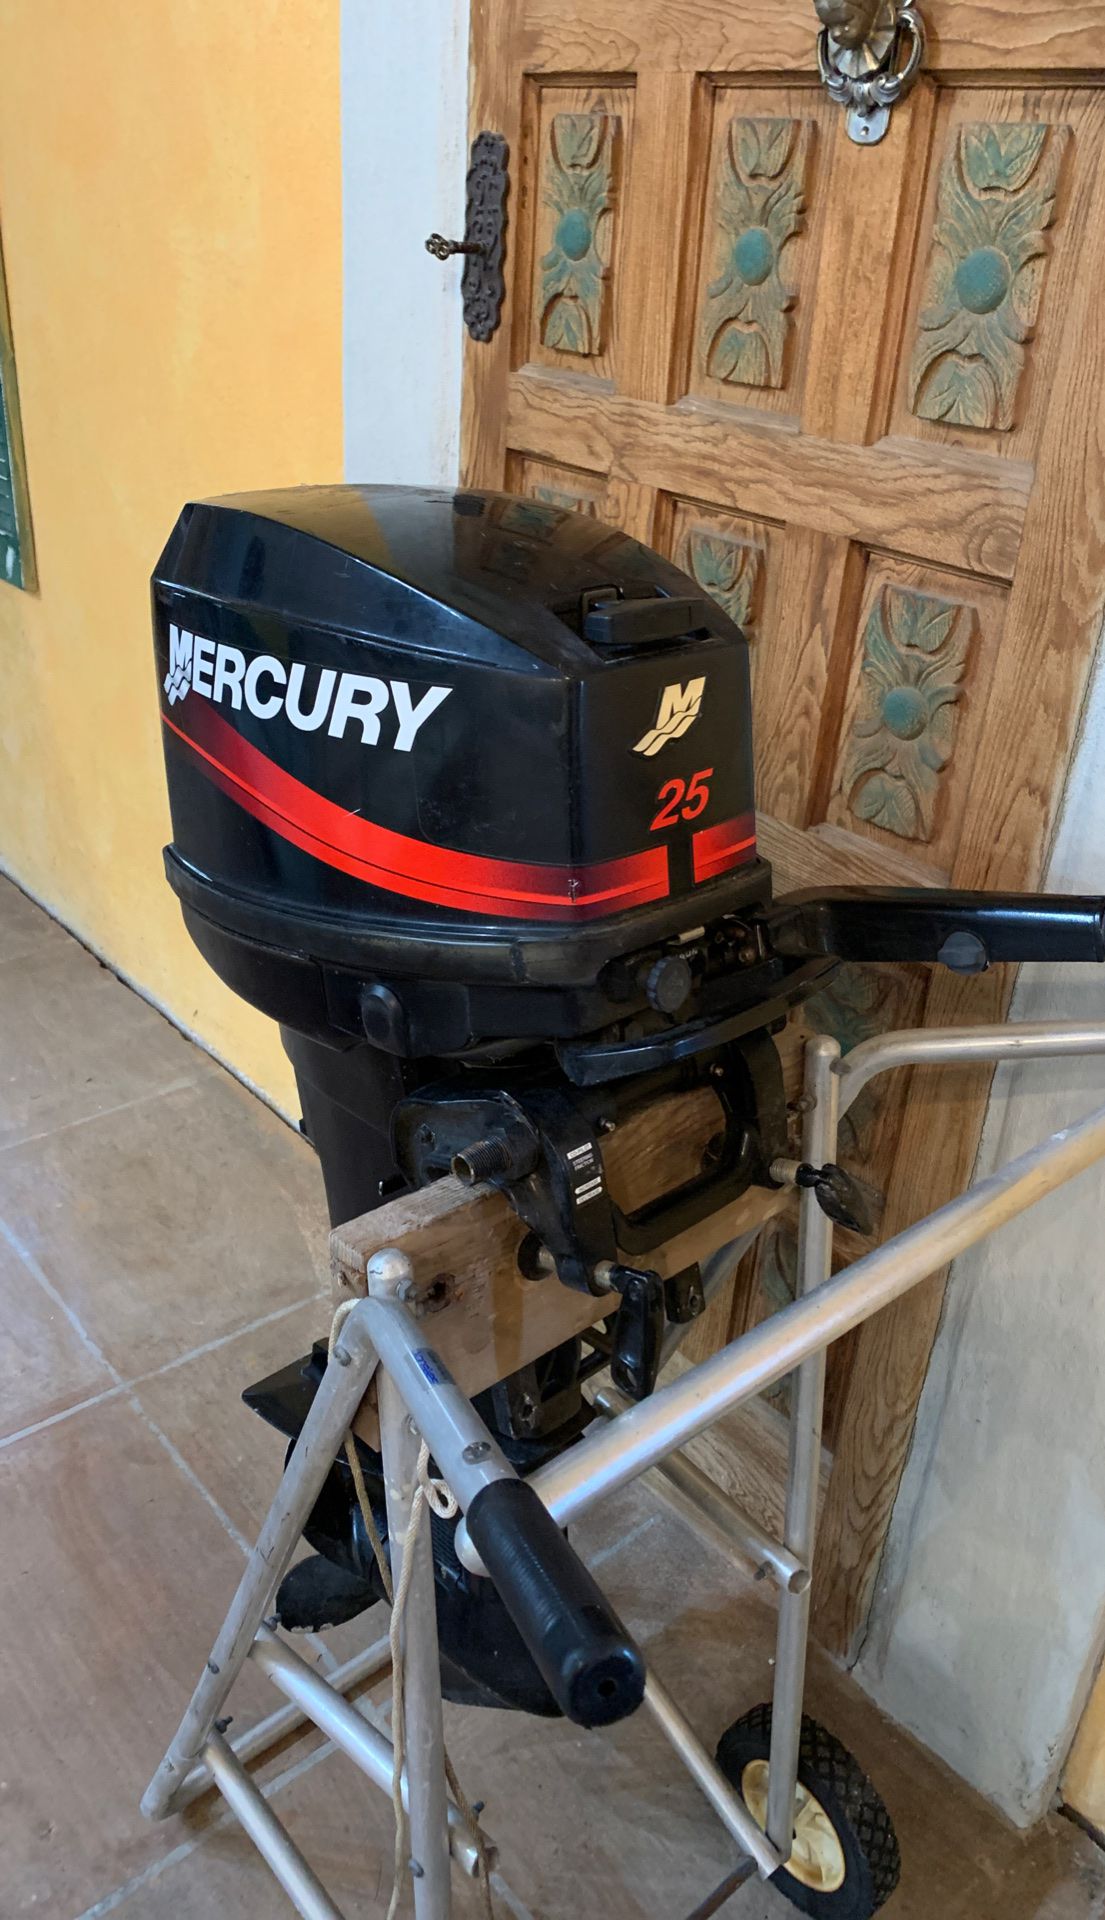 Mercury 25 hp outboard motor $1200